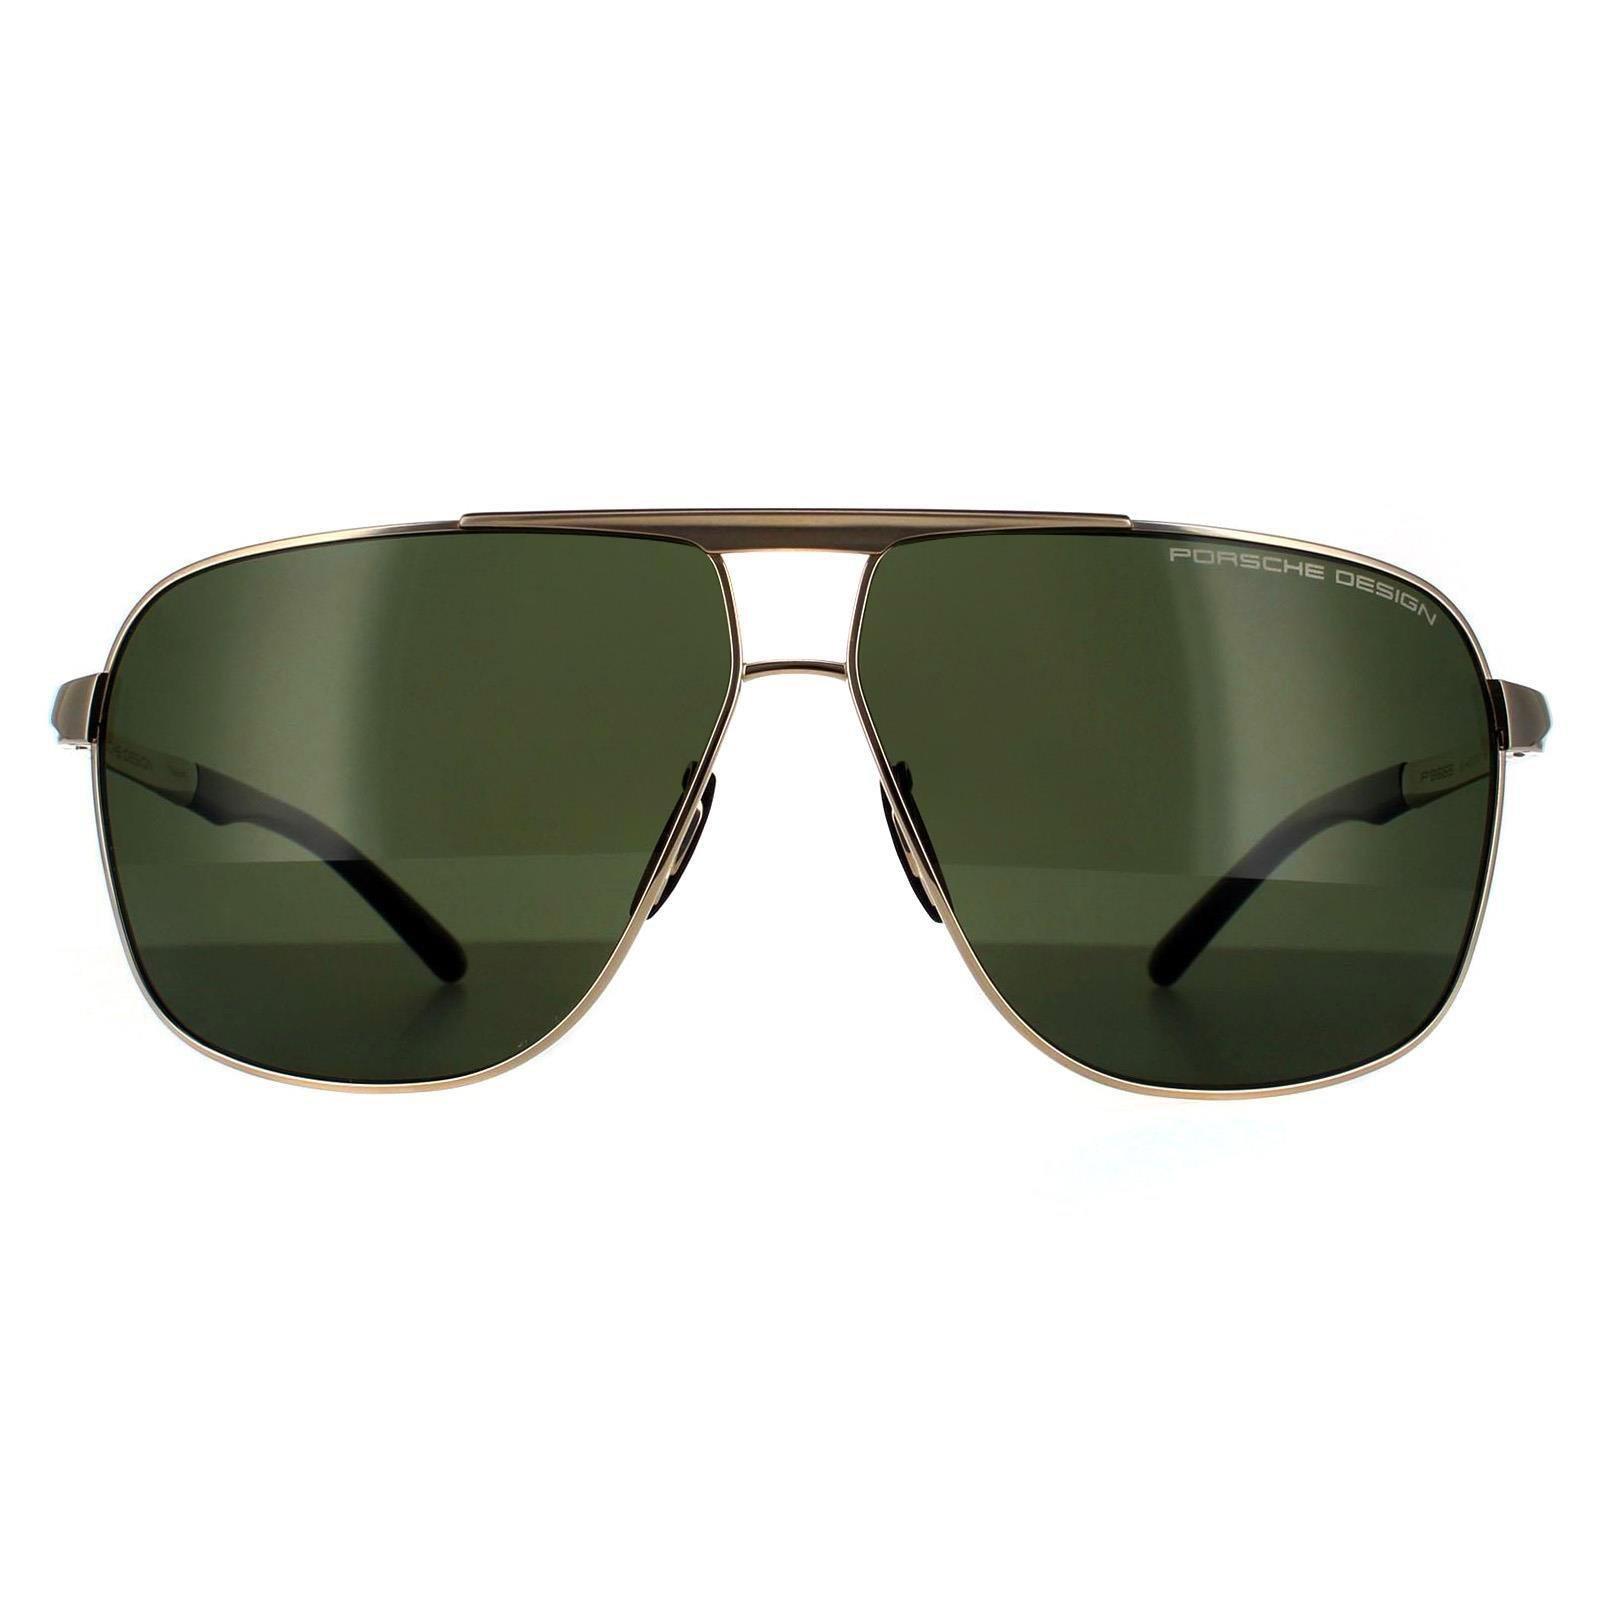 Поляризованные солнцезащитные очки Aviator золотисто-зелено-серые Porsche Design, золото темно синие зеркальные солнцезащитные очки aviator gun porsche design серый